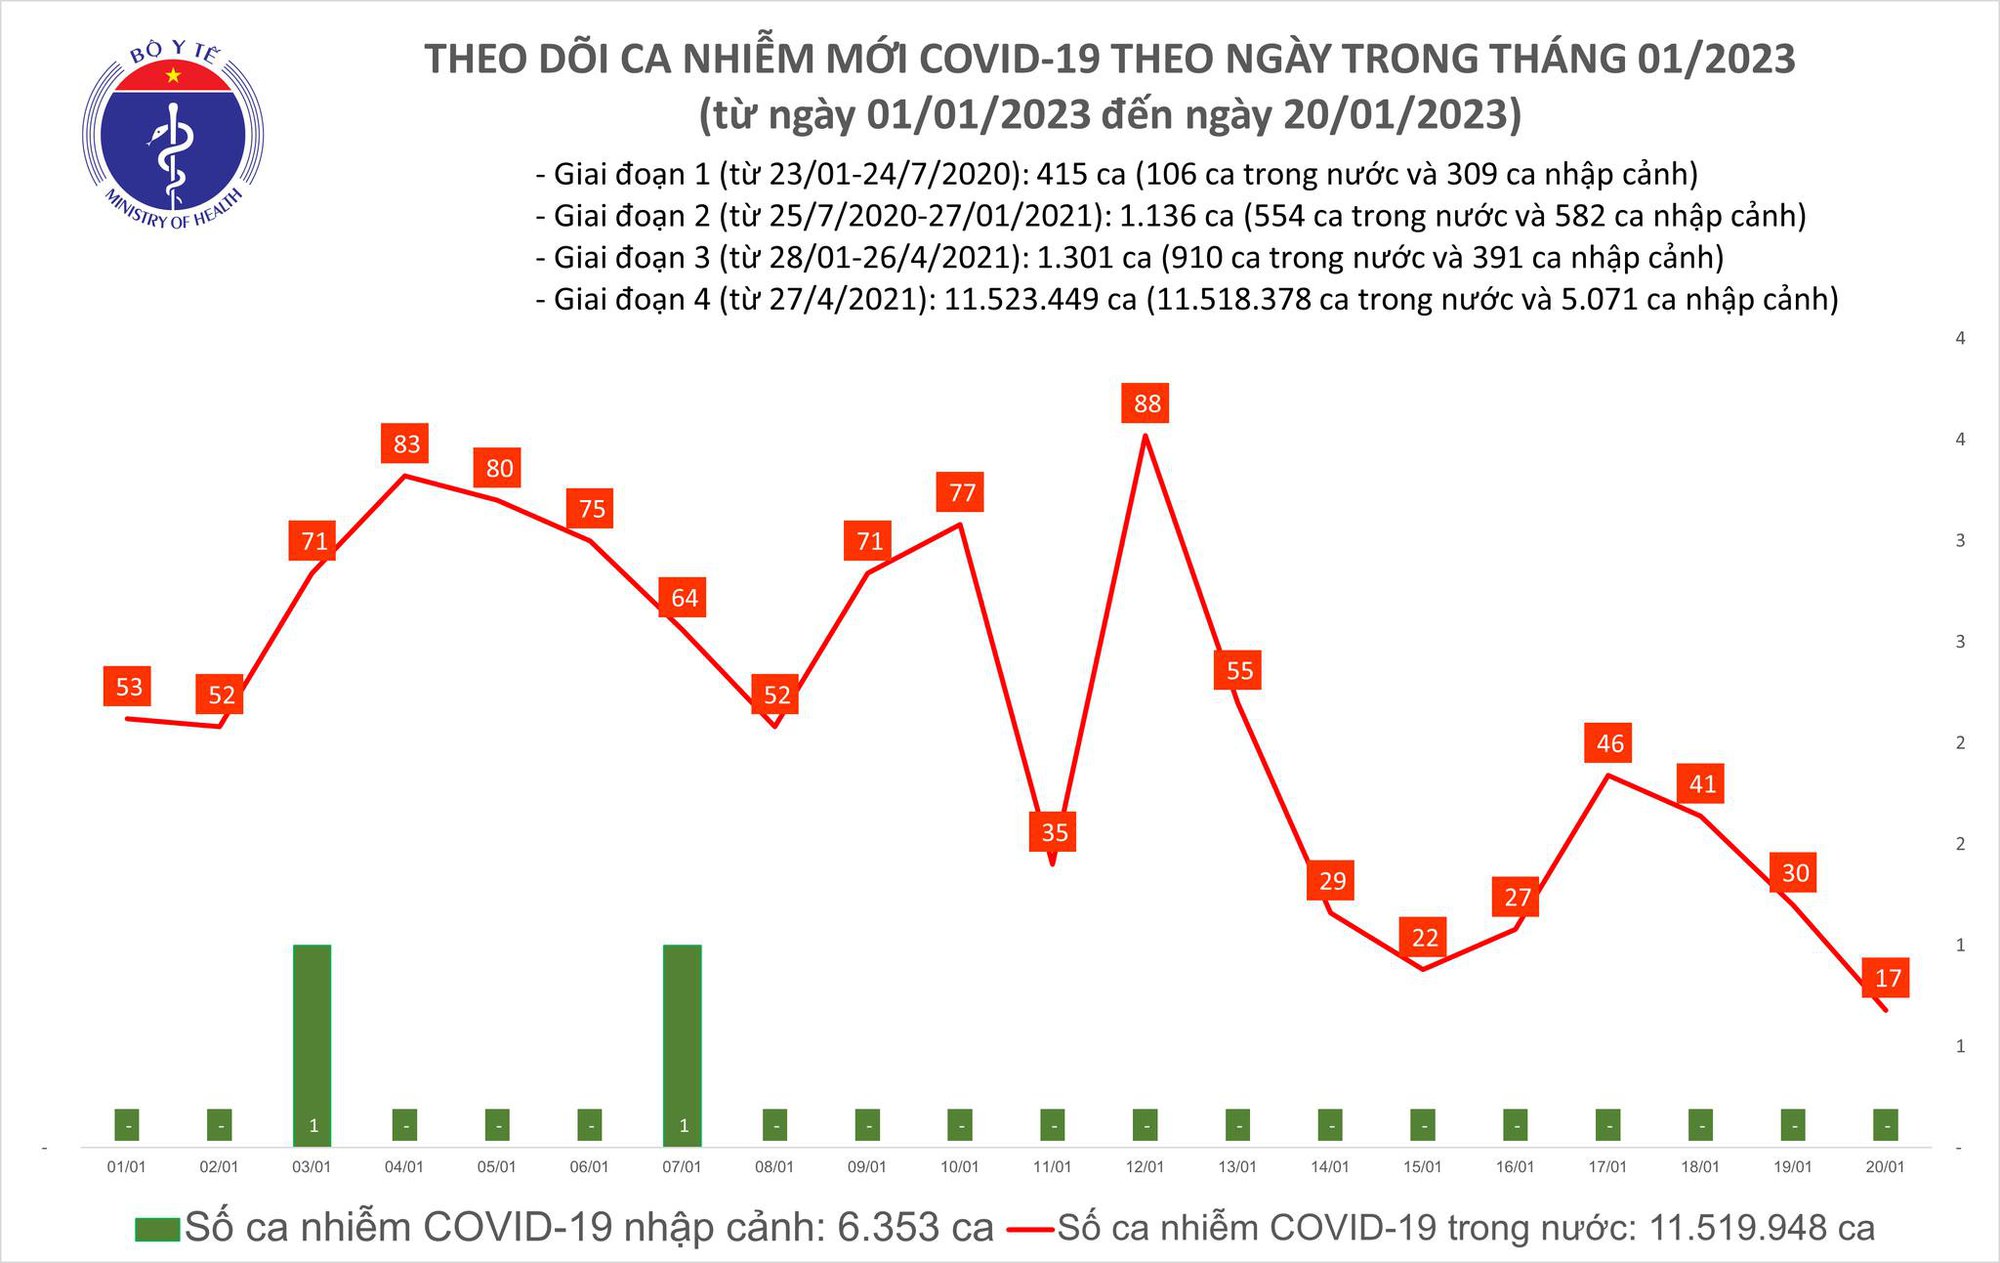 29 Tết Quý Mão: Ca mắc COVID-19 giảm nhẹ, cả nước không còn bệnh nhân nặng - Ảnh 1.